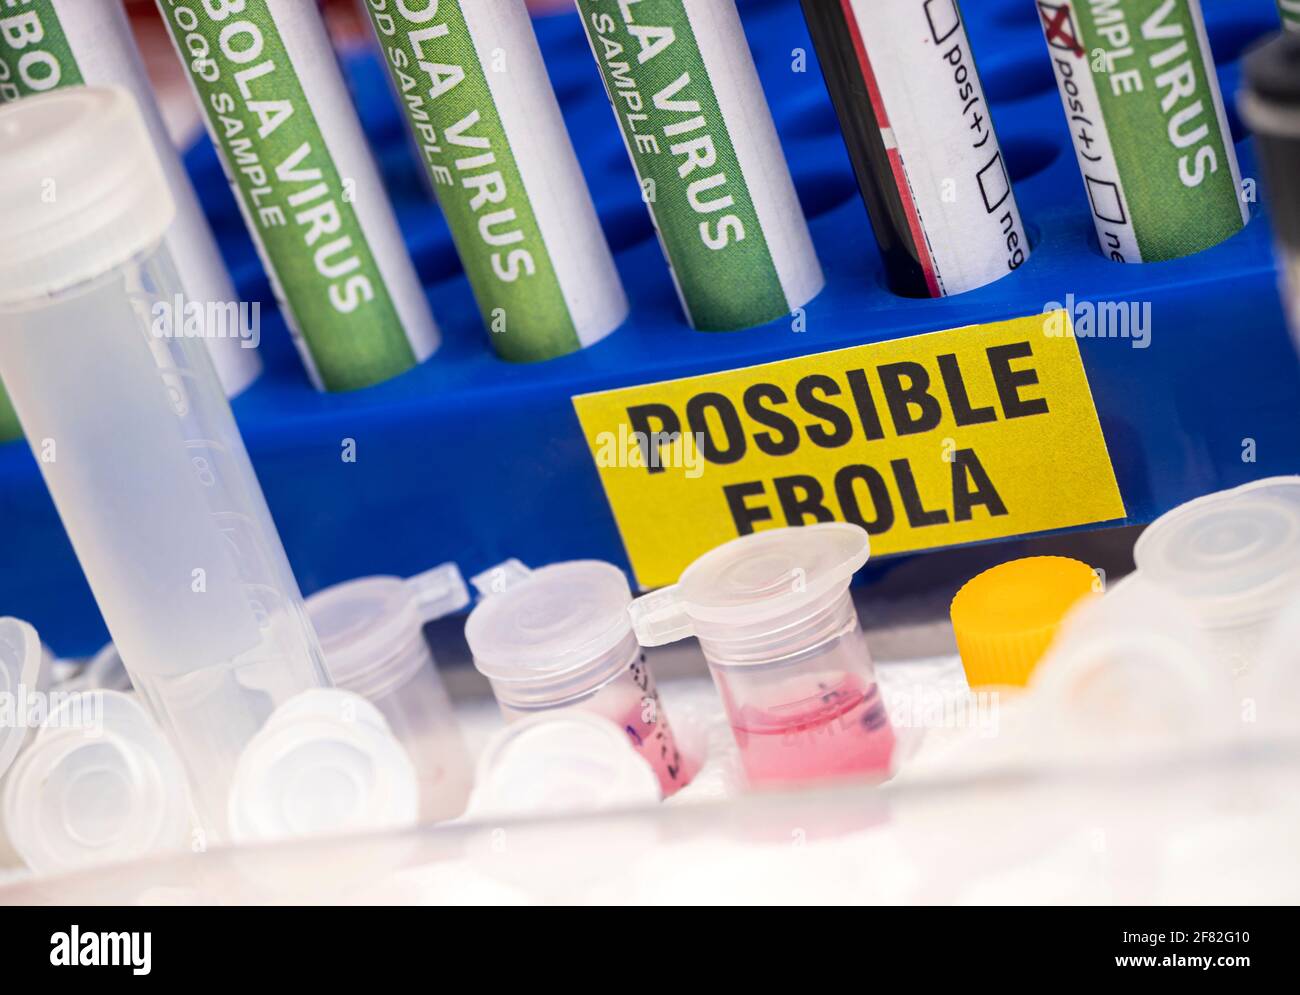 Campione di sangue da paziente Ebola, risultato positivo, immagine concettuale Foto Stock